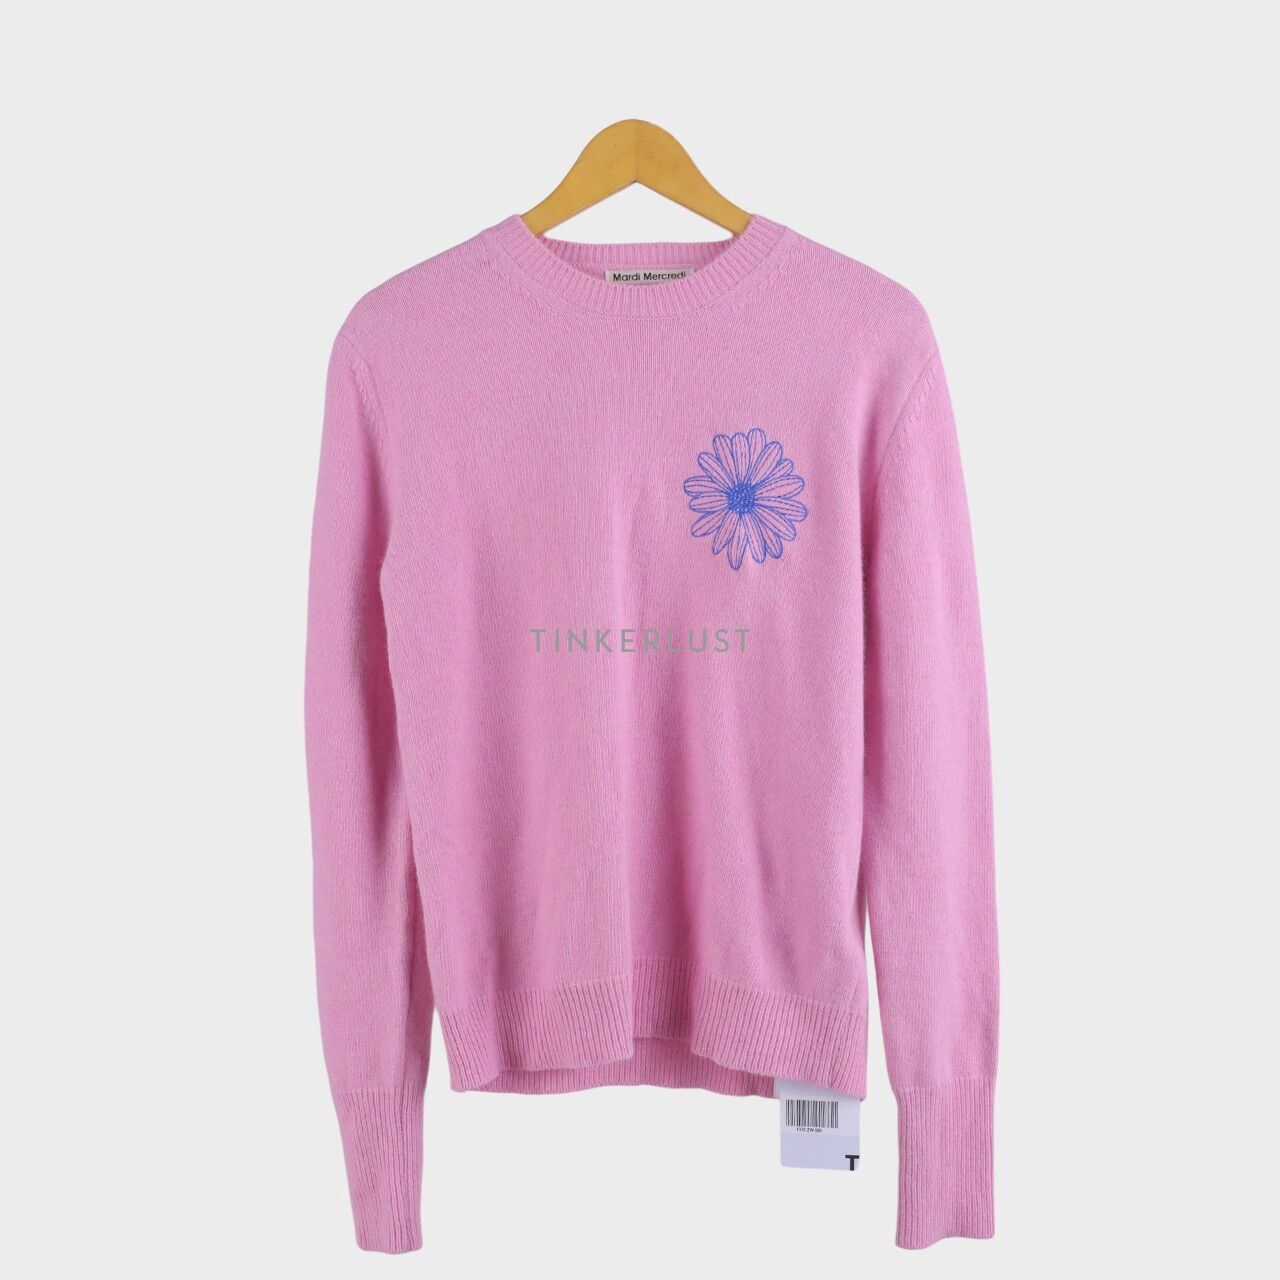 Mardi Mercredi Pink Sweatshirt